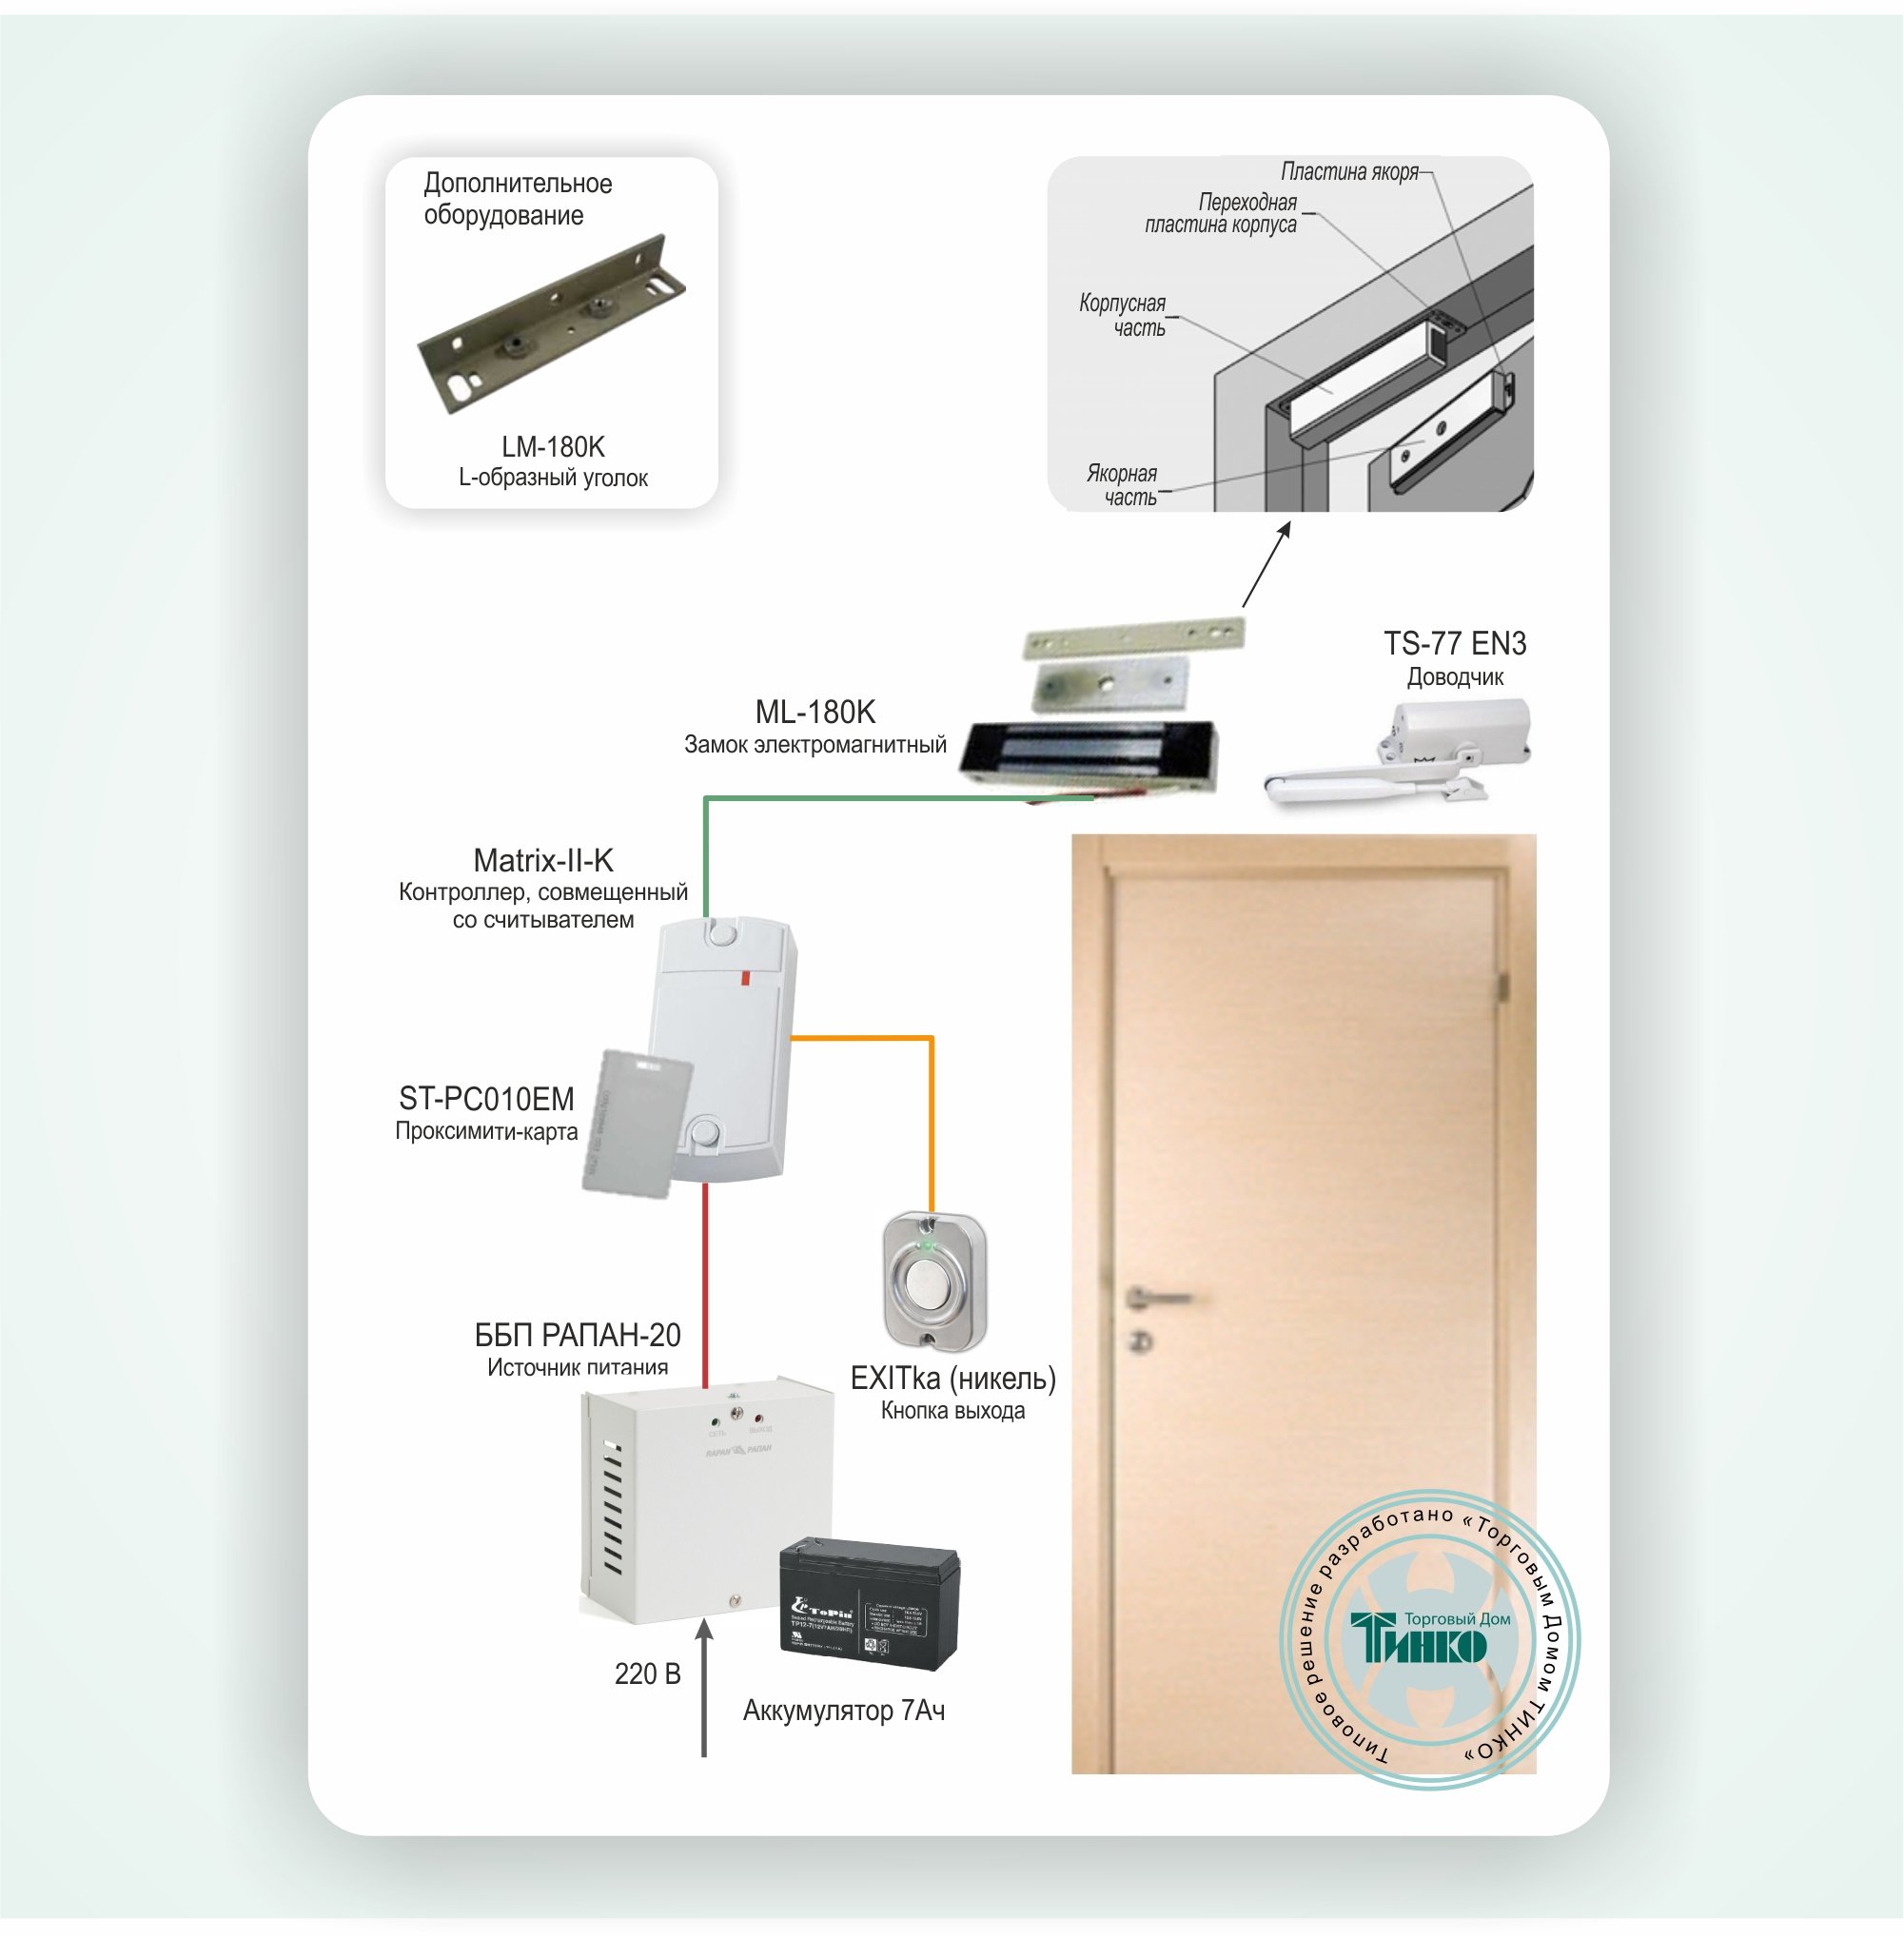 СКУД-001: Автономная система контроля доступа на одну дверь с электромагнитным замком